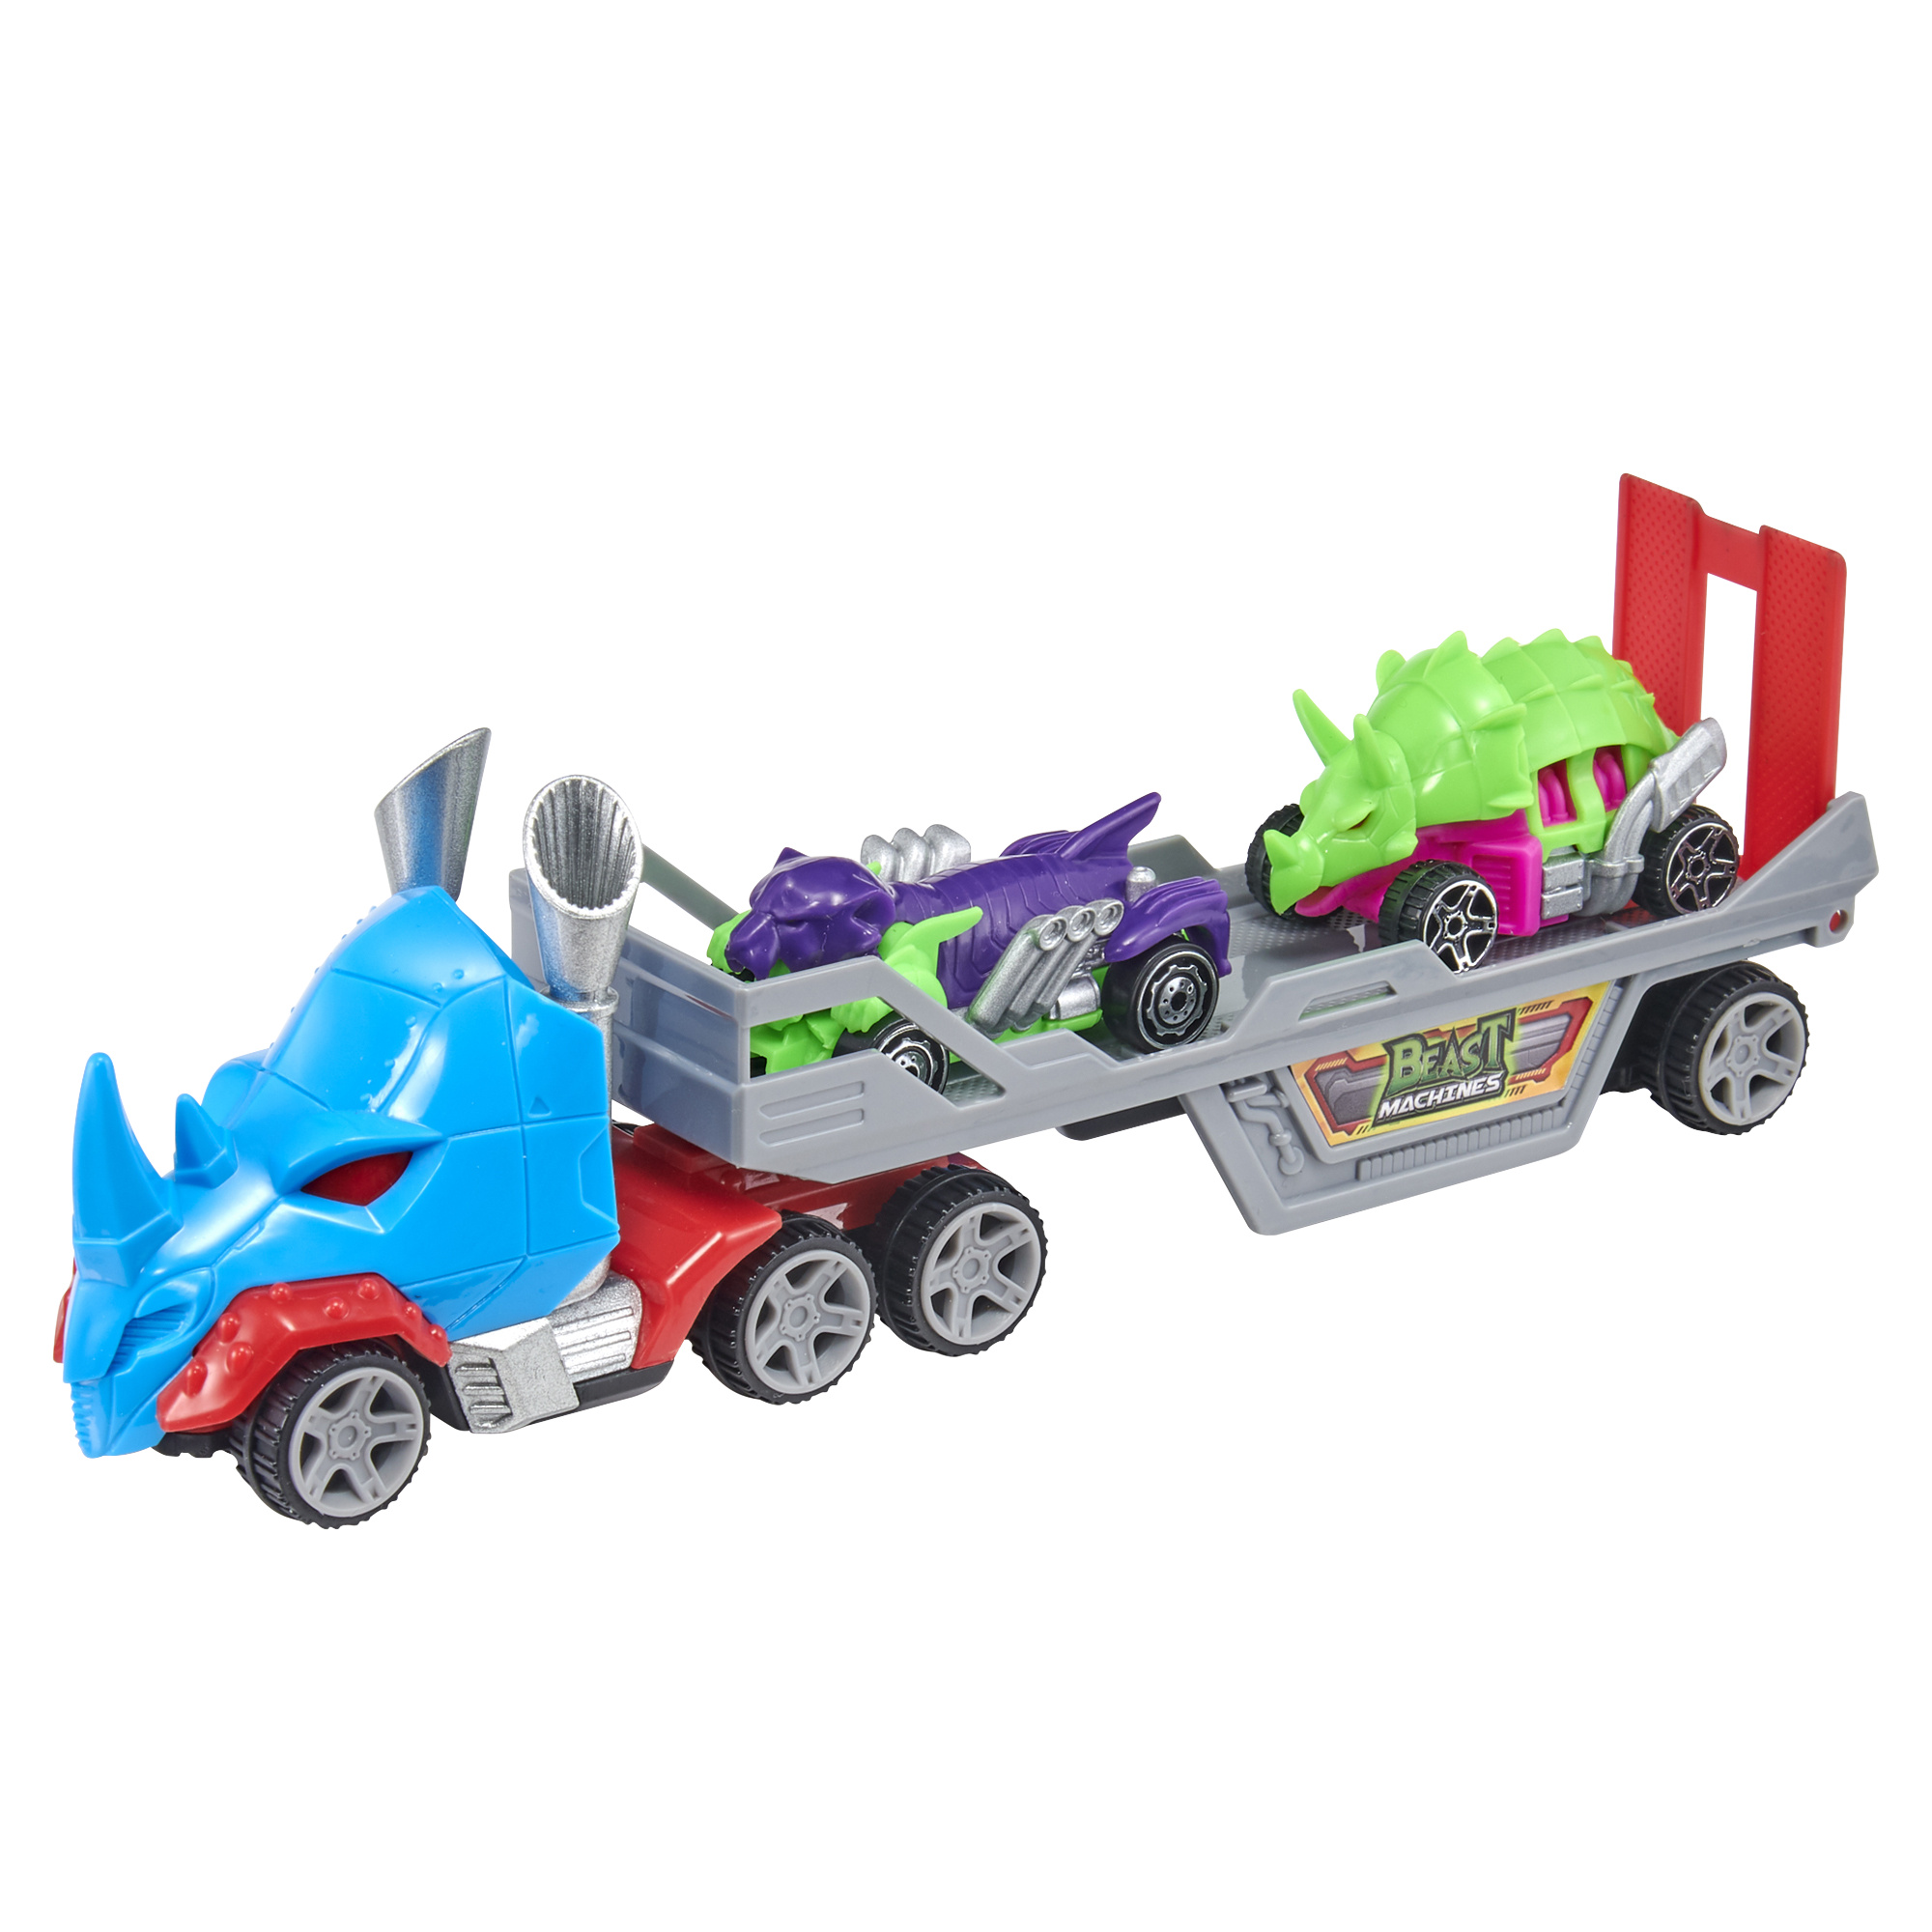 Camion beast machine: trasporta e gioca con le tue beast machines - ruote libere e rampa mobile - MOTORI & CO